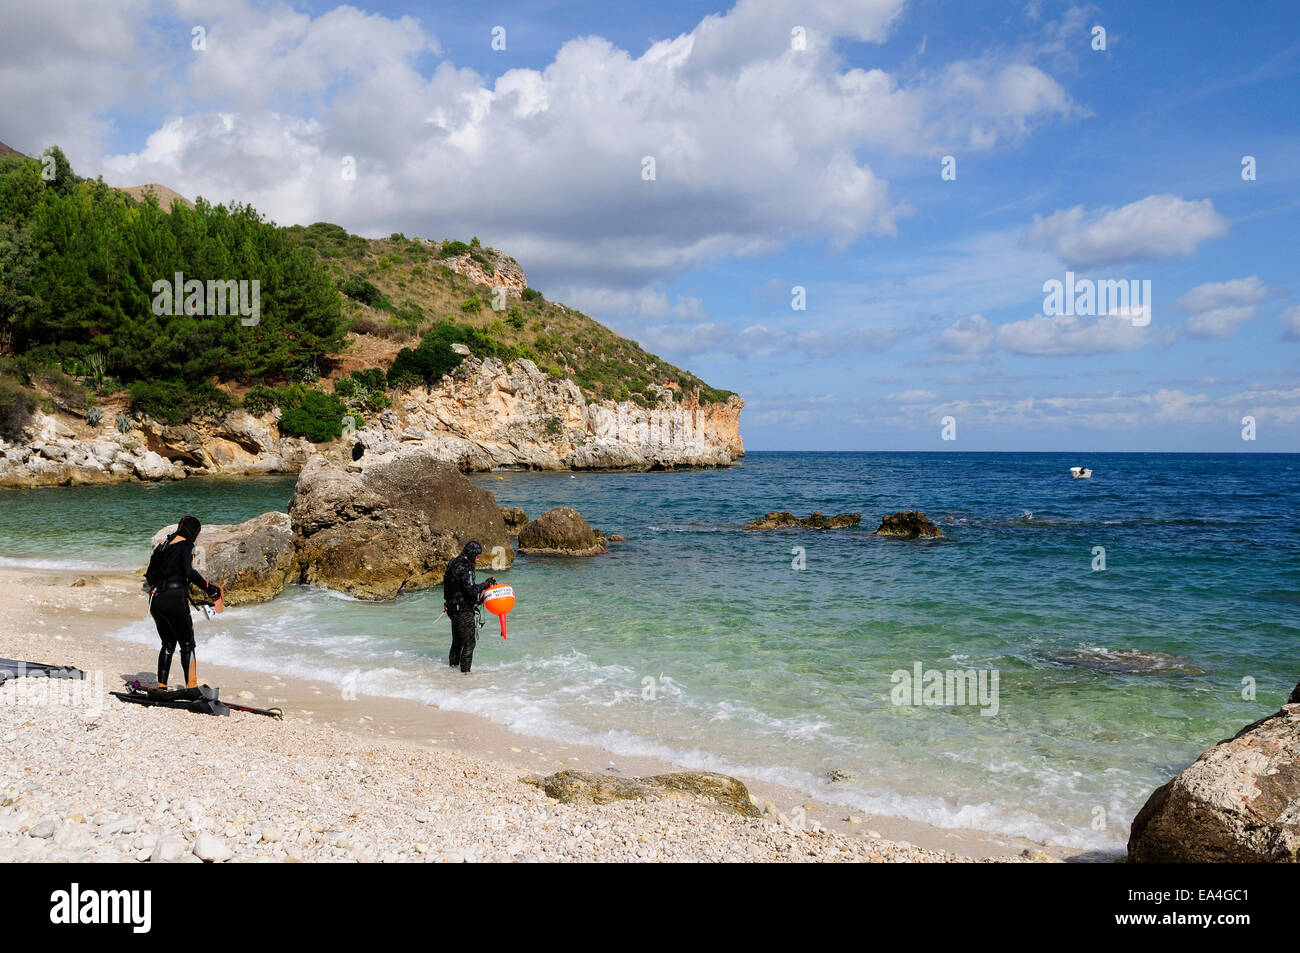 two scuba diver on the sandy beach of Mazzo di Sciacca, near Castellammare del Golfo, Sicily Stock Photo